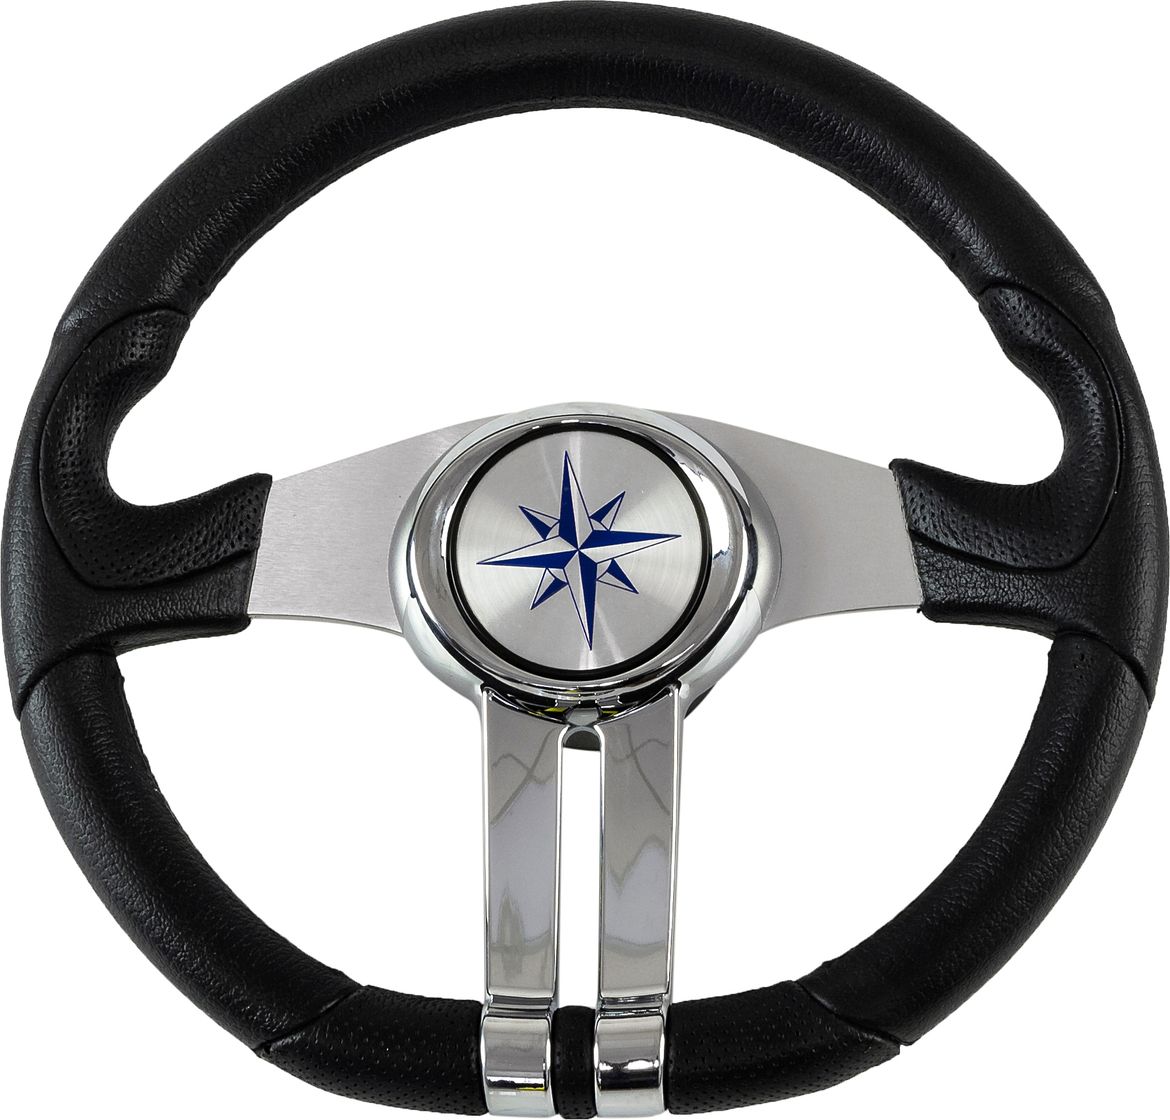 Рулевое колесо BALTIC обод черный, спицы серебряные д. 320 мм VN133203-01 рулевое колесо leader tanegum обод серебряные спицы д 360 мм vn7360 01